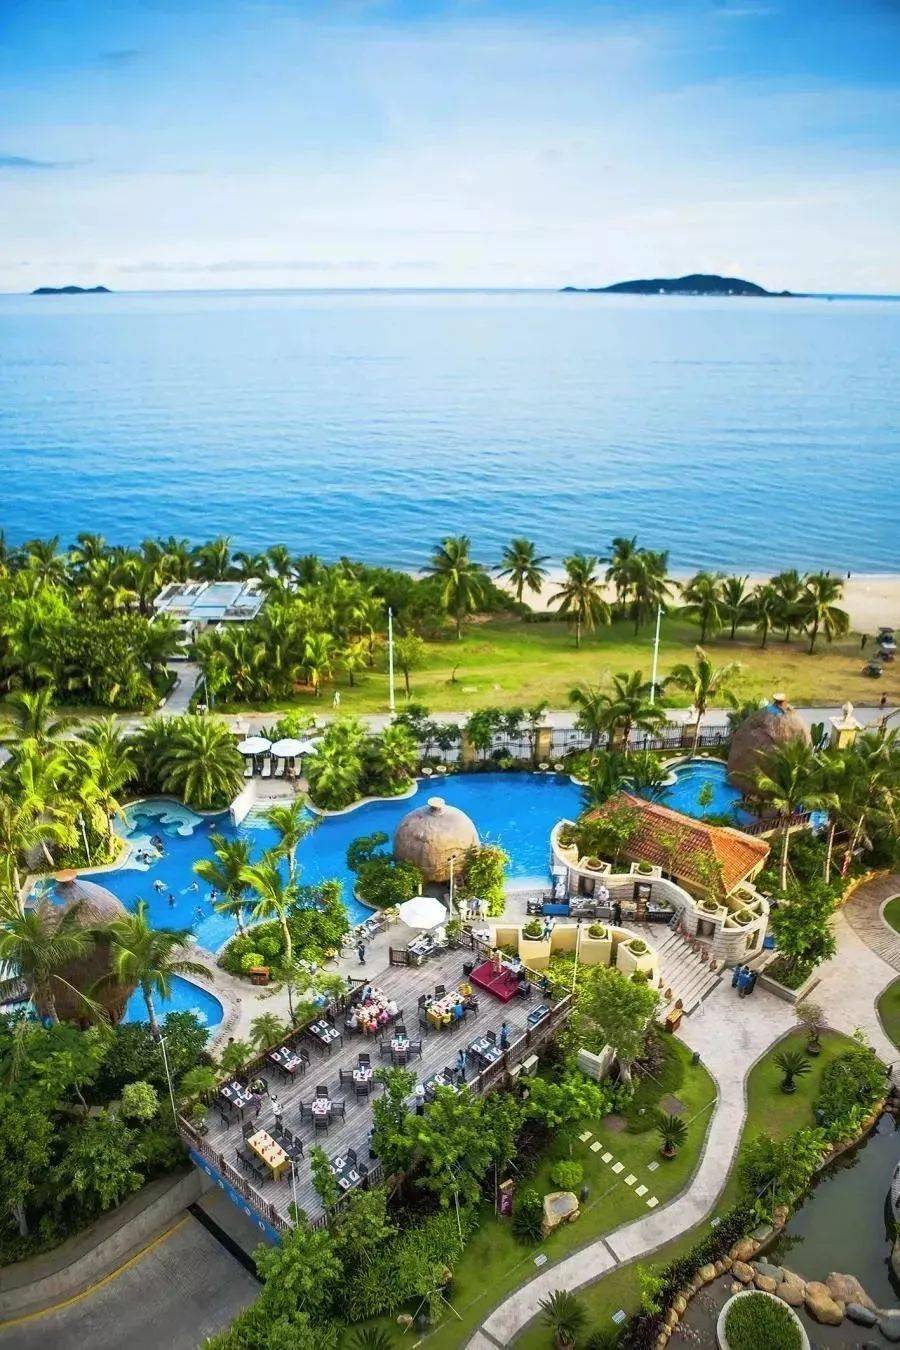 酒店的地理位置特别好,临近海边椰梦长廊,距三亚西岛旅游度假区约7